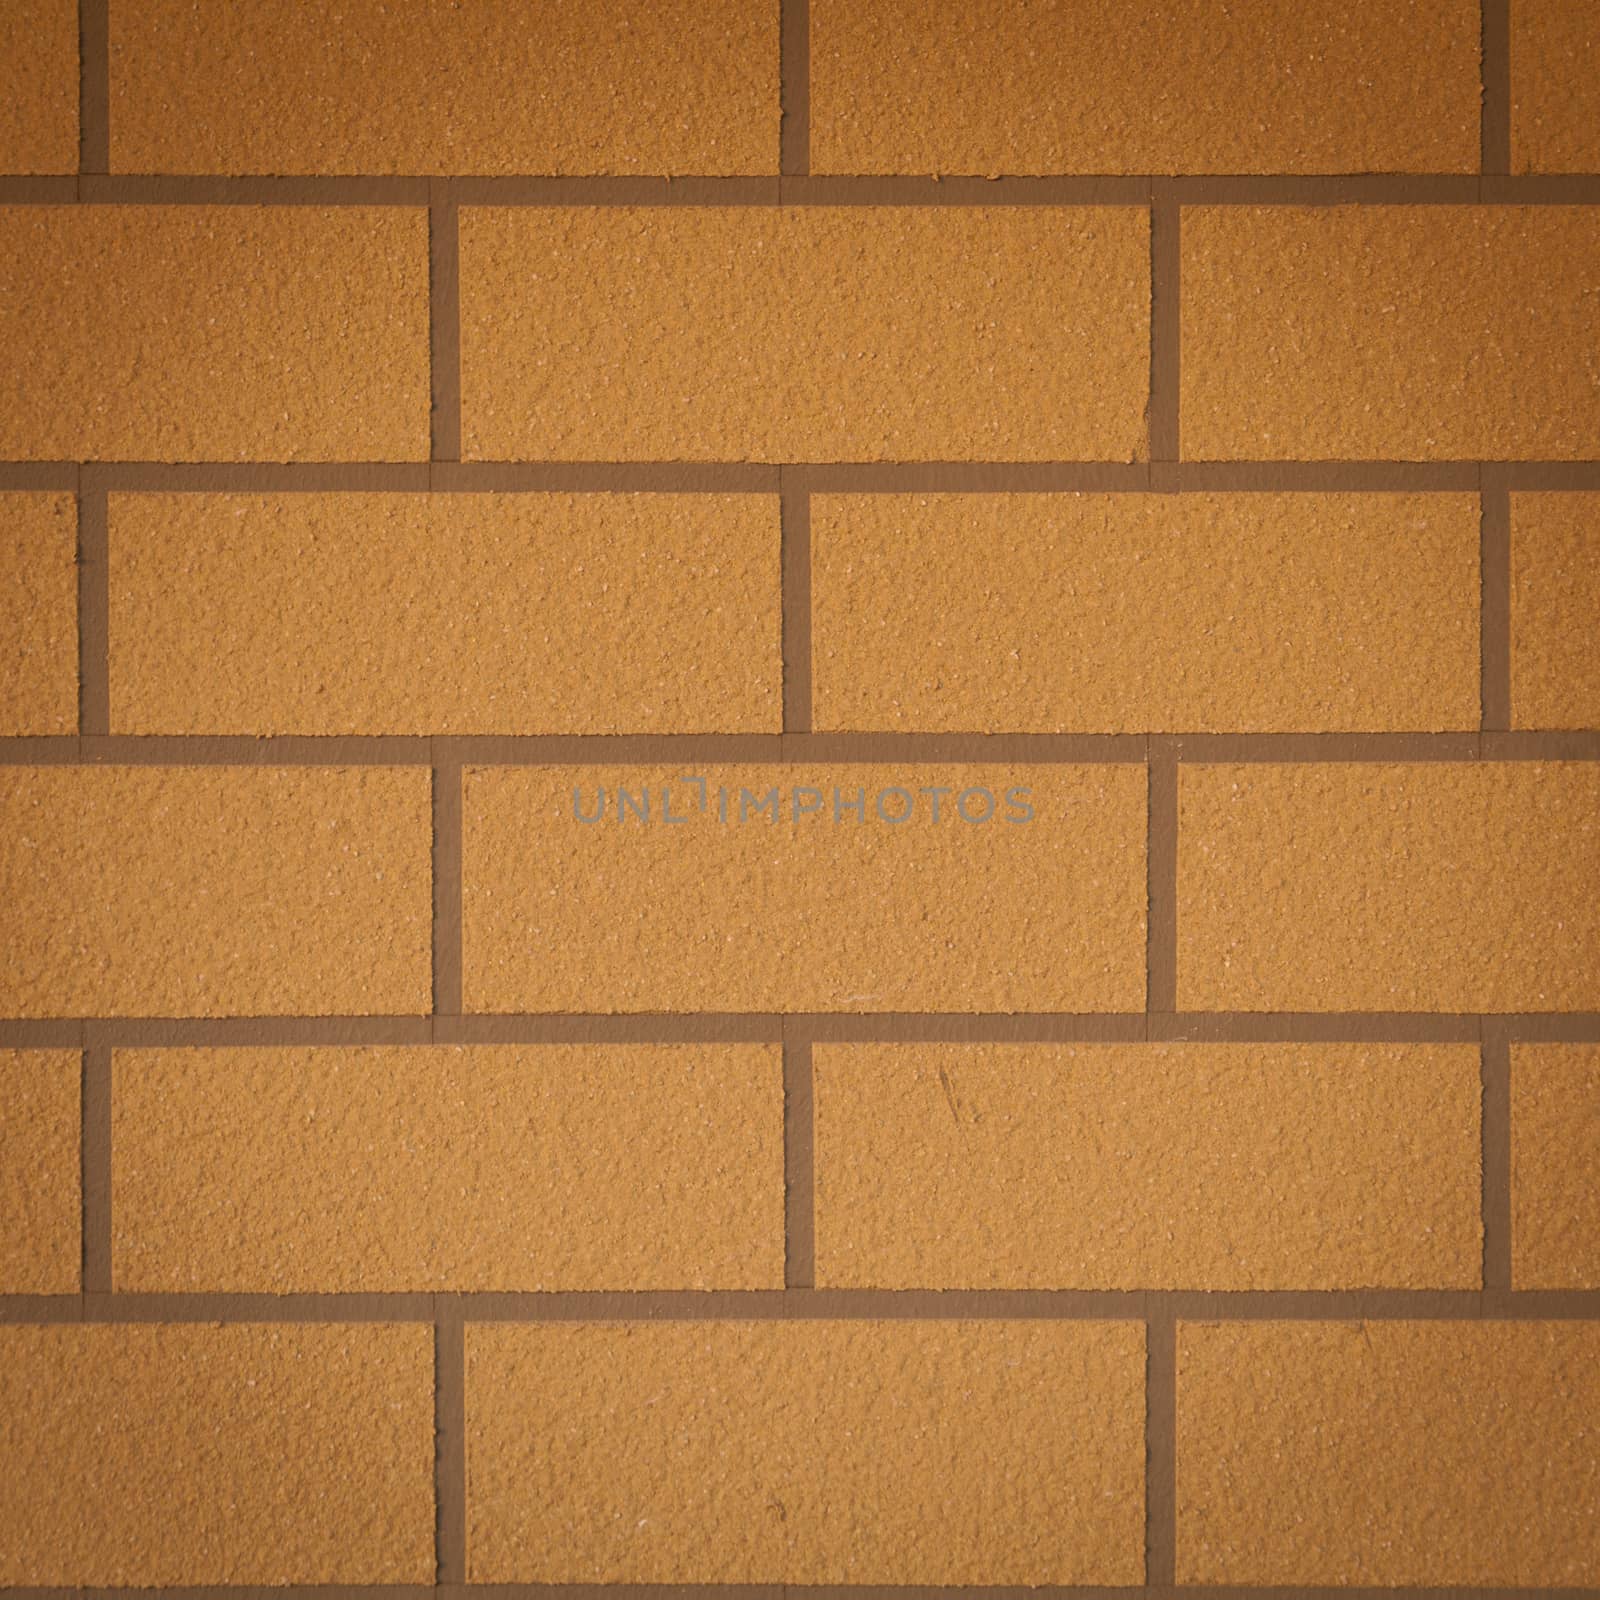 Brown brick wall. A square brick tile wall.